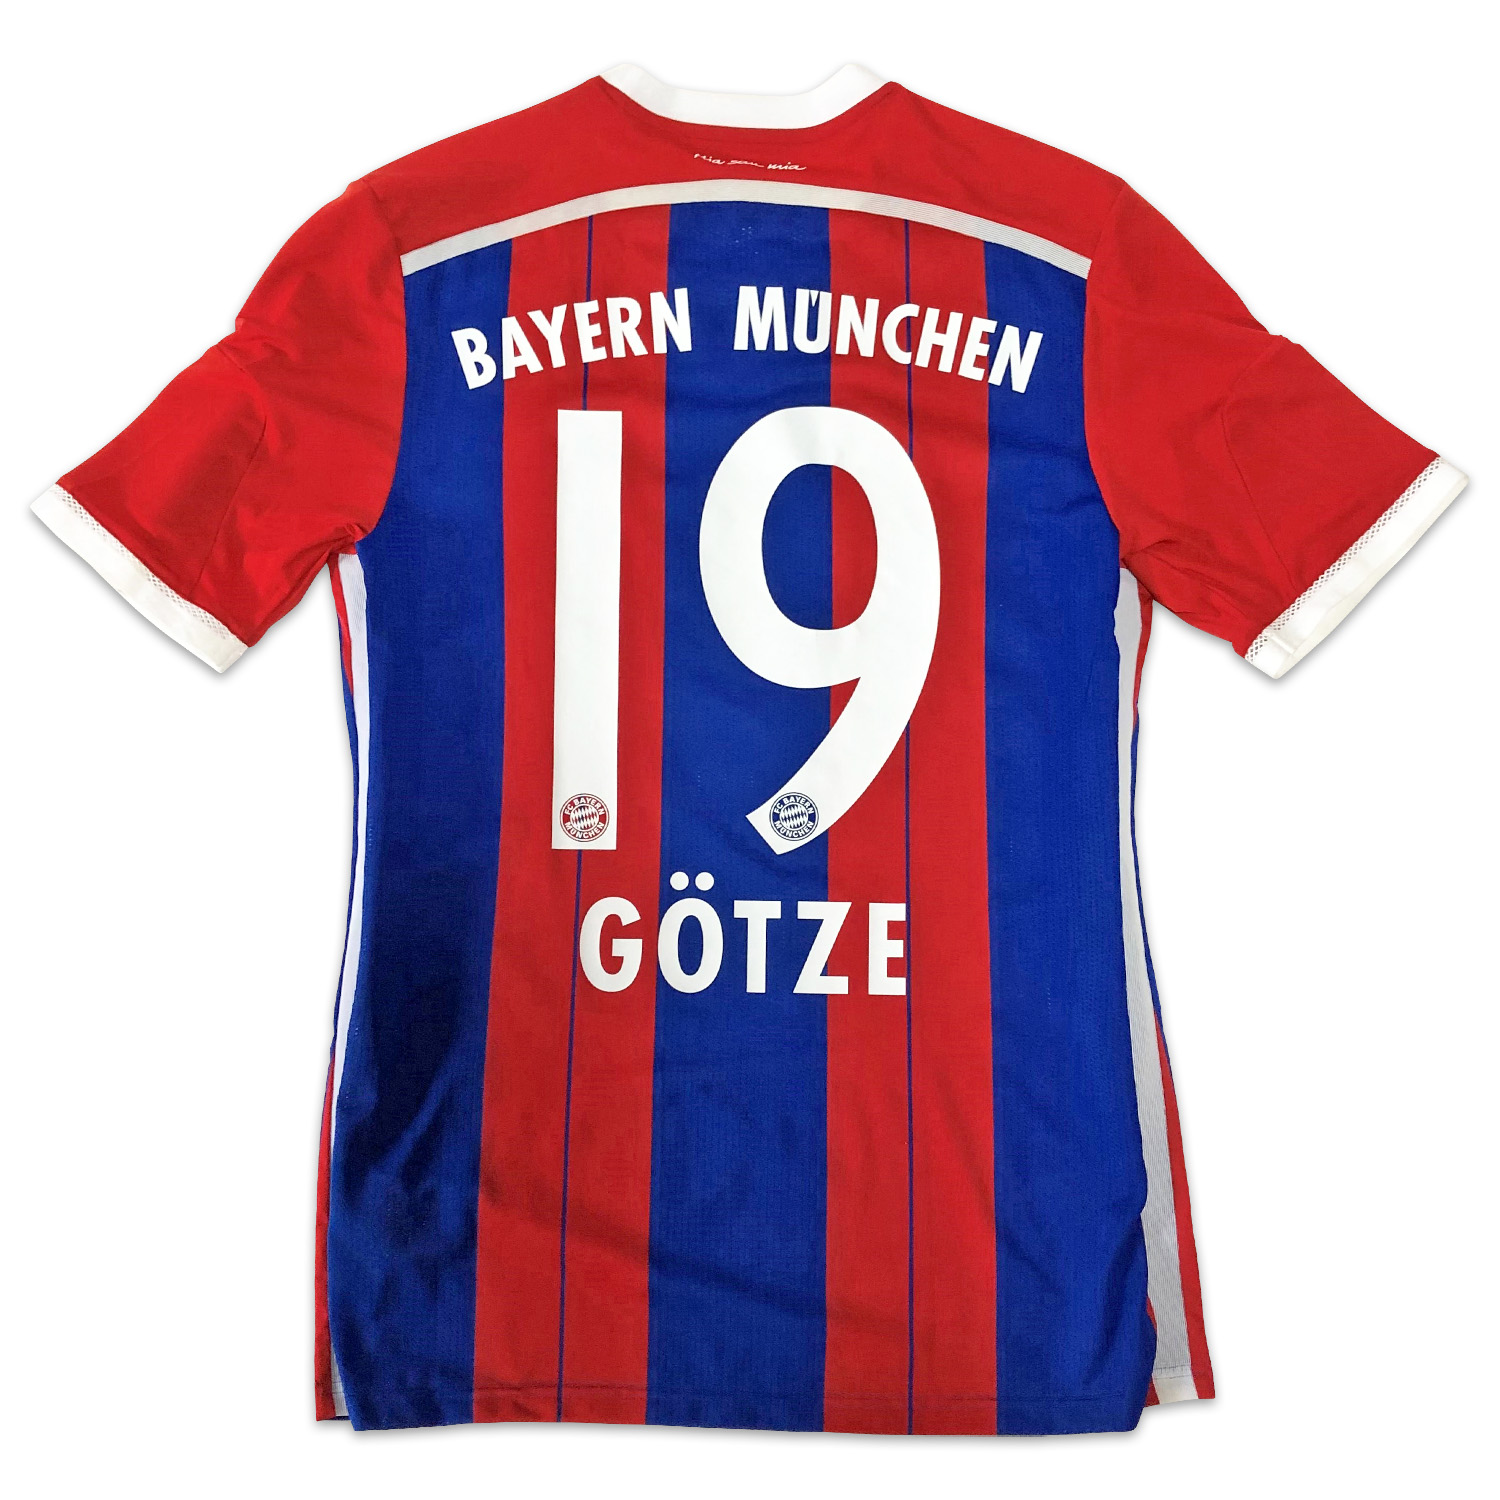 ゲッツェ実使用バイエルン・ミュンヘン14/15ホームユニフォーム (腕章付き) / Mario Götze autographed Bayern  Munich 14/15 match worn home shirt